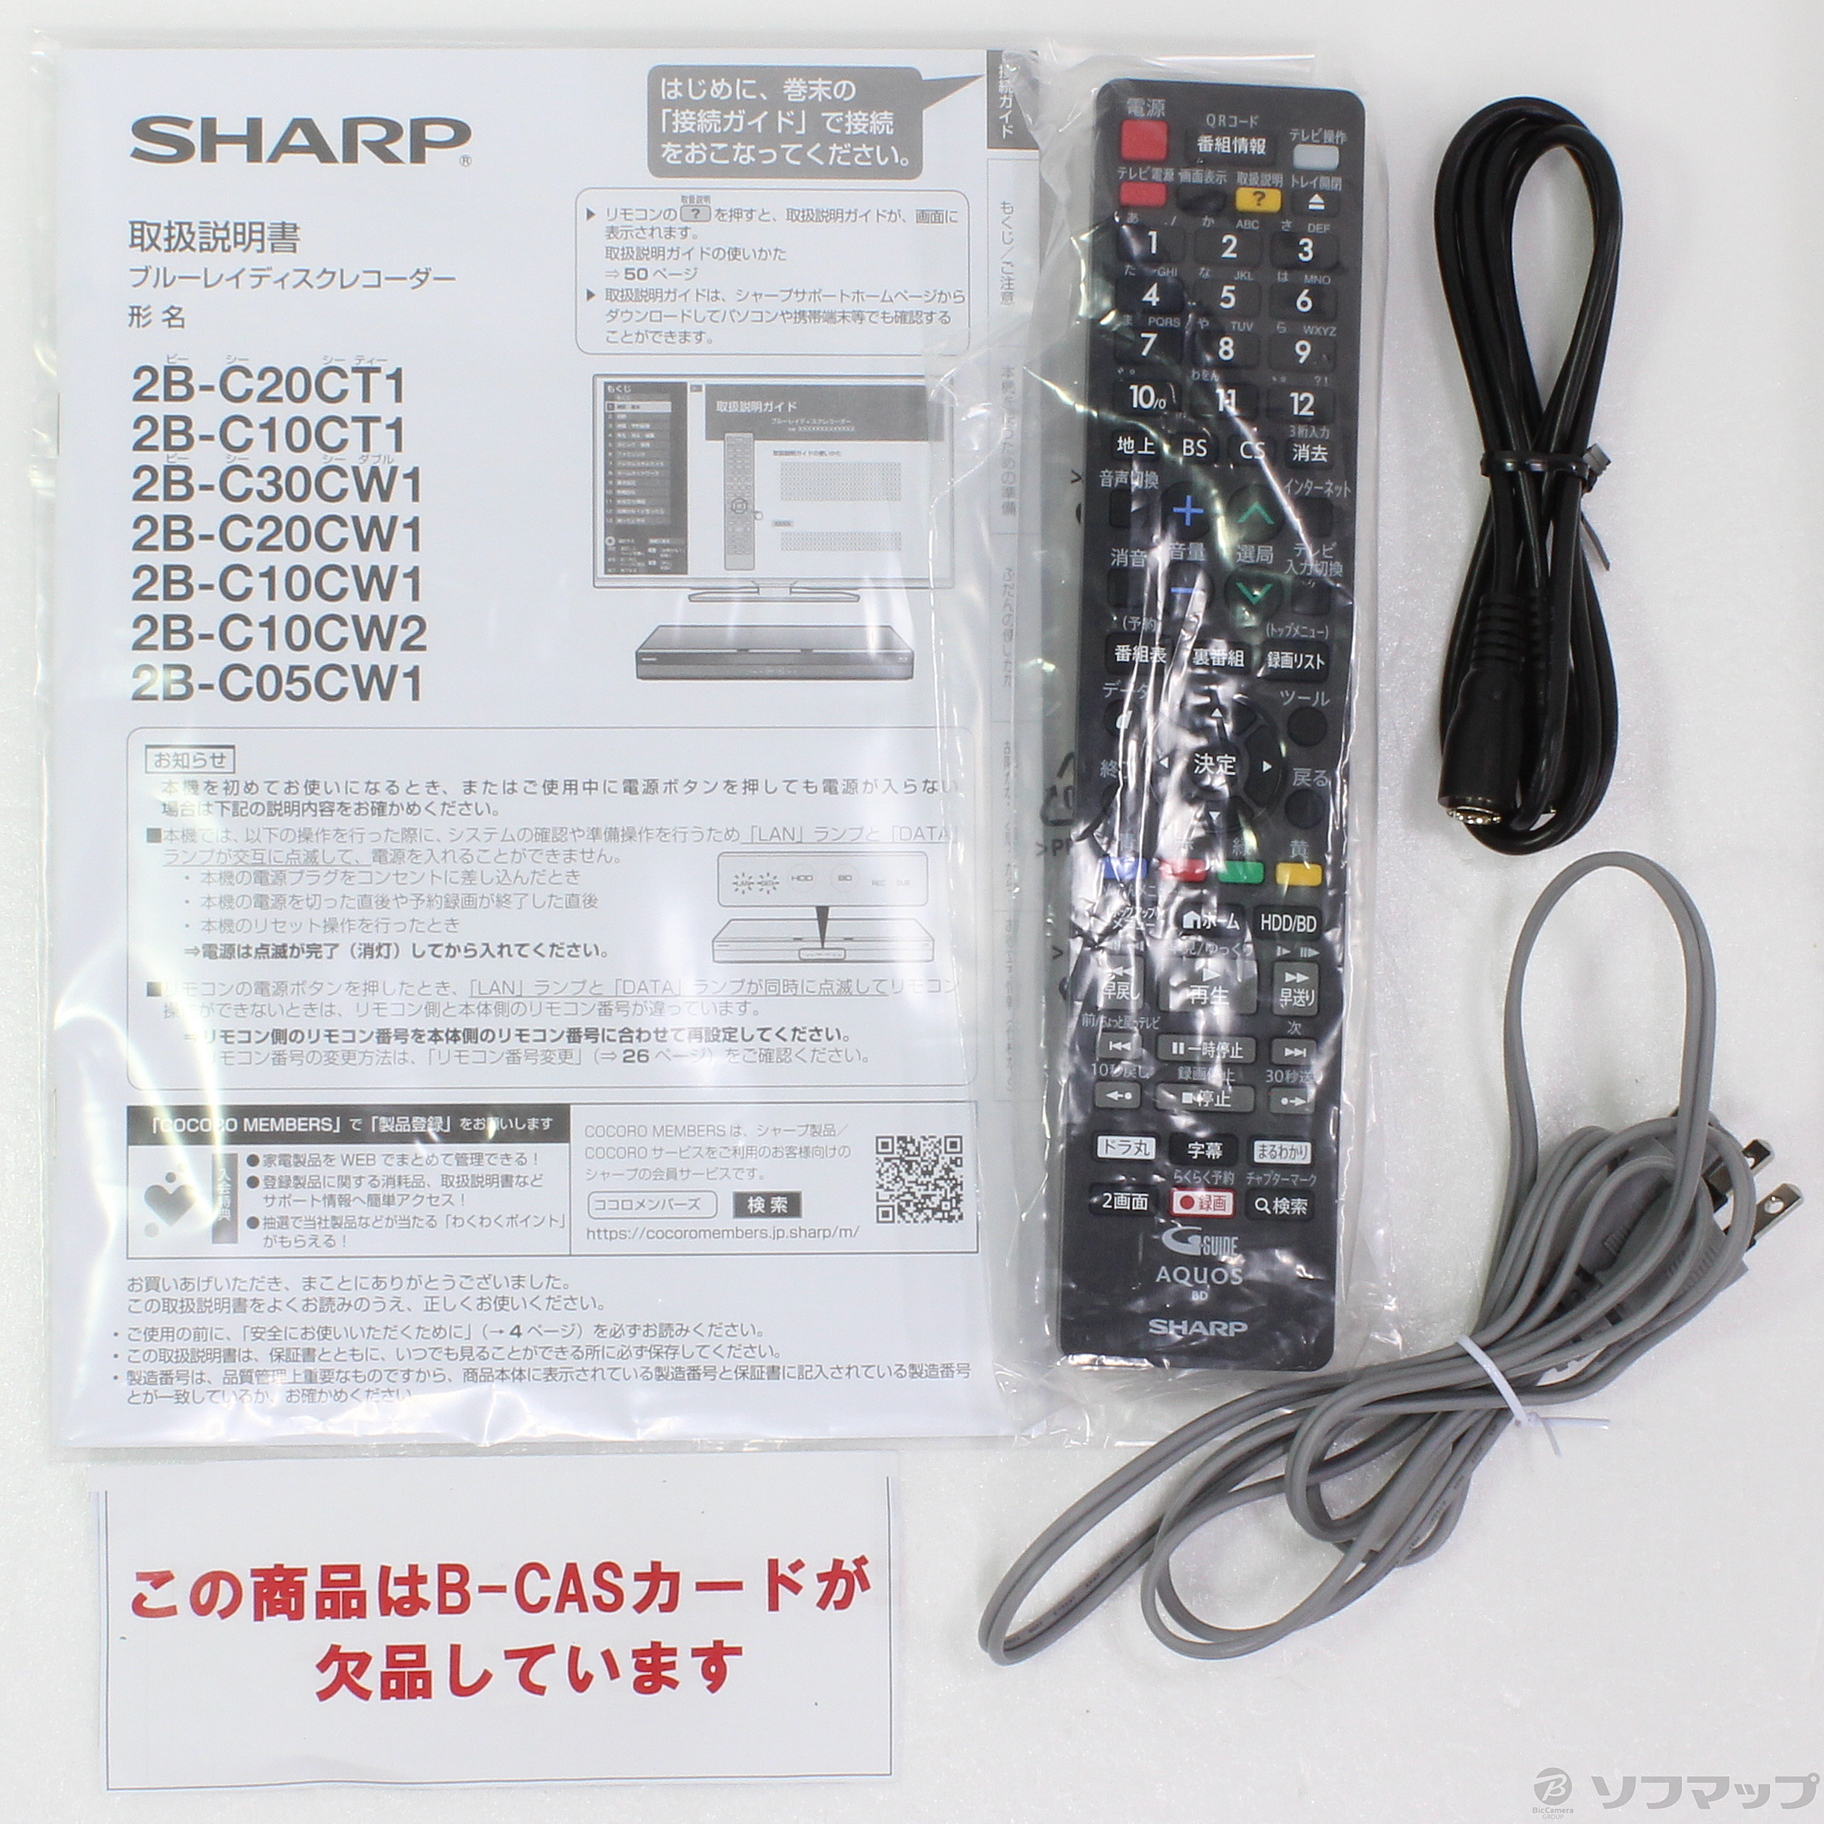 SHARP AQUOS ブルーレイレコーダー 2B-C05CW1ブルーレイレコーダー